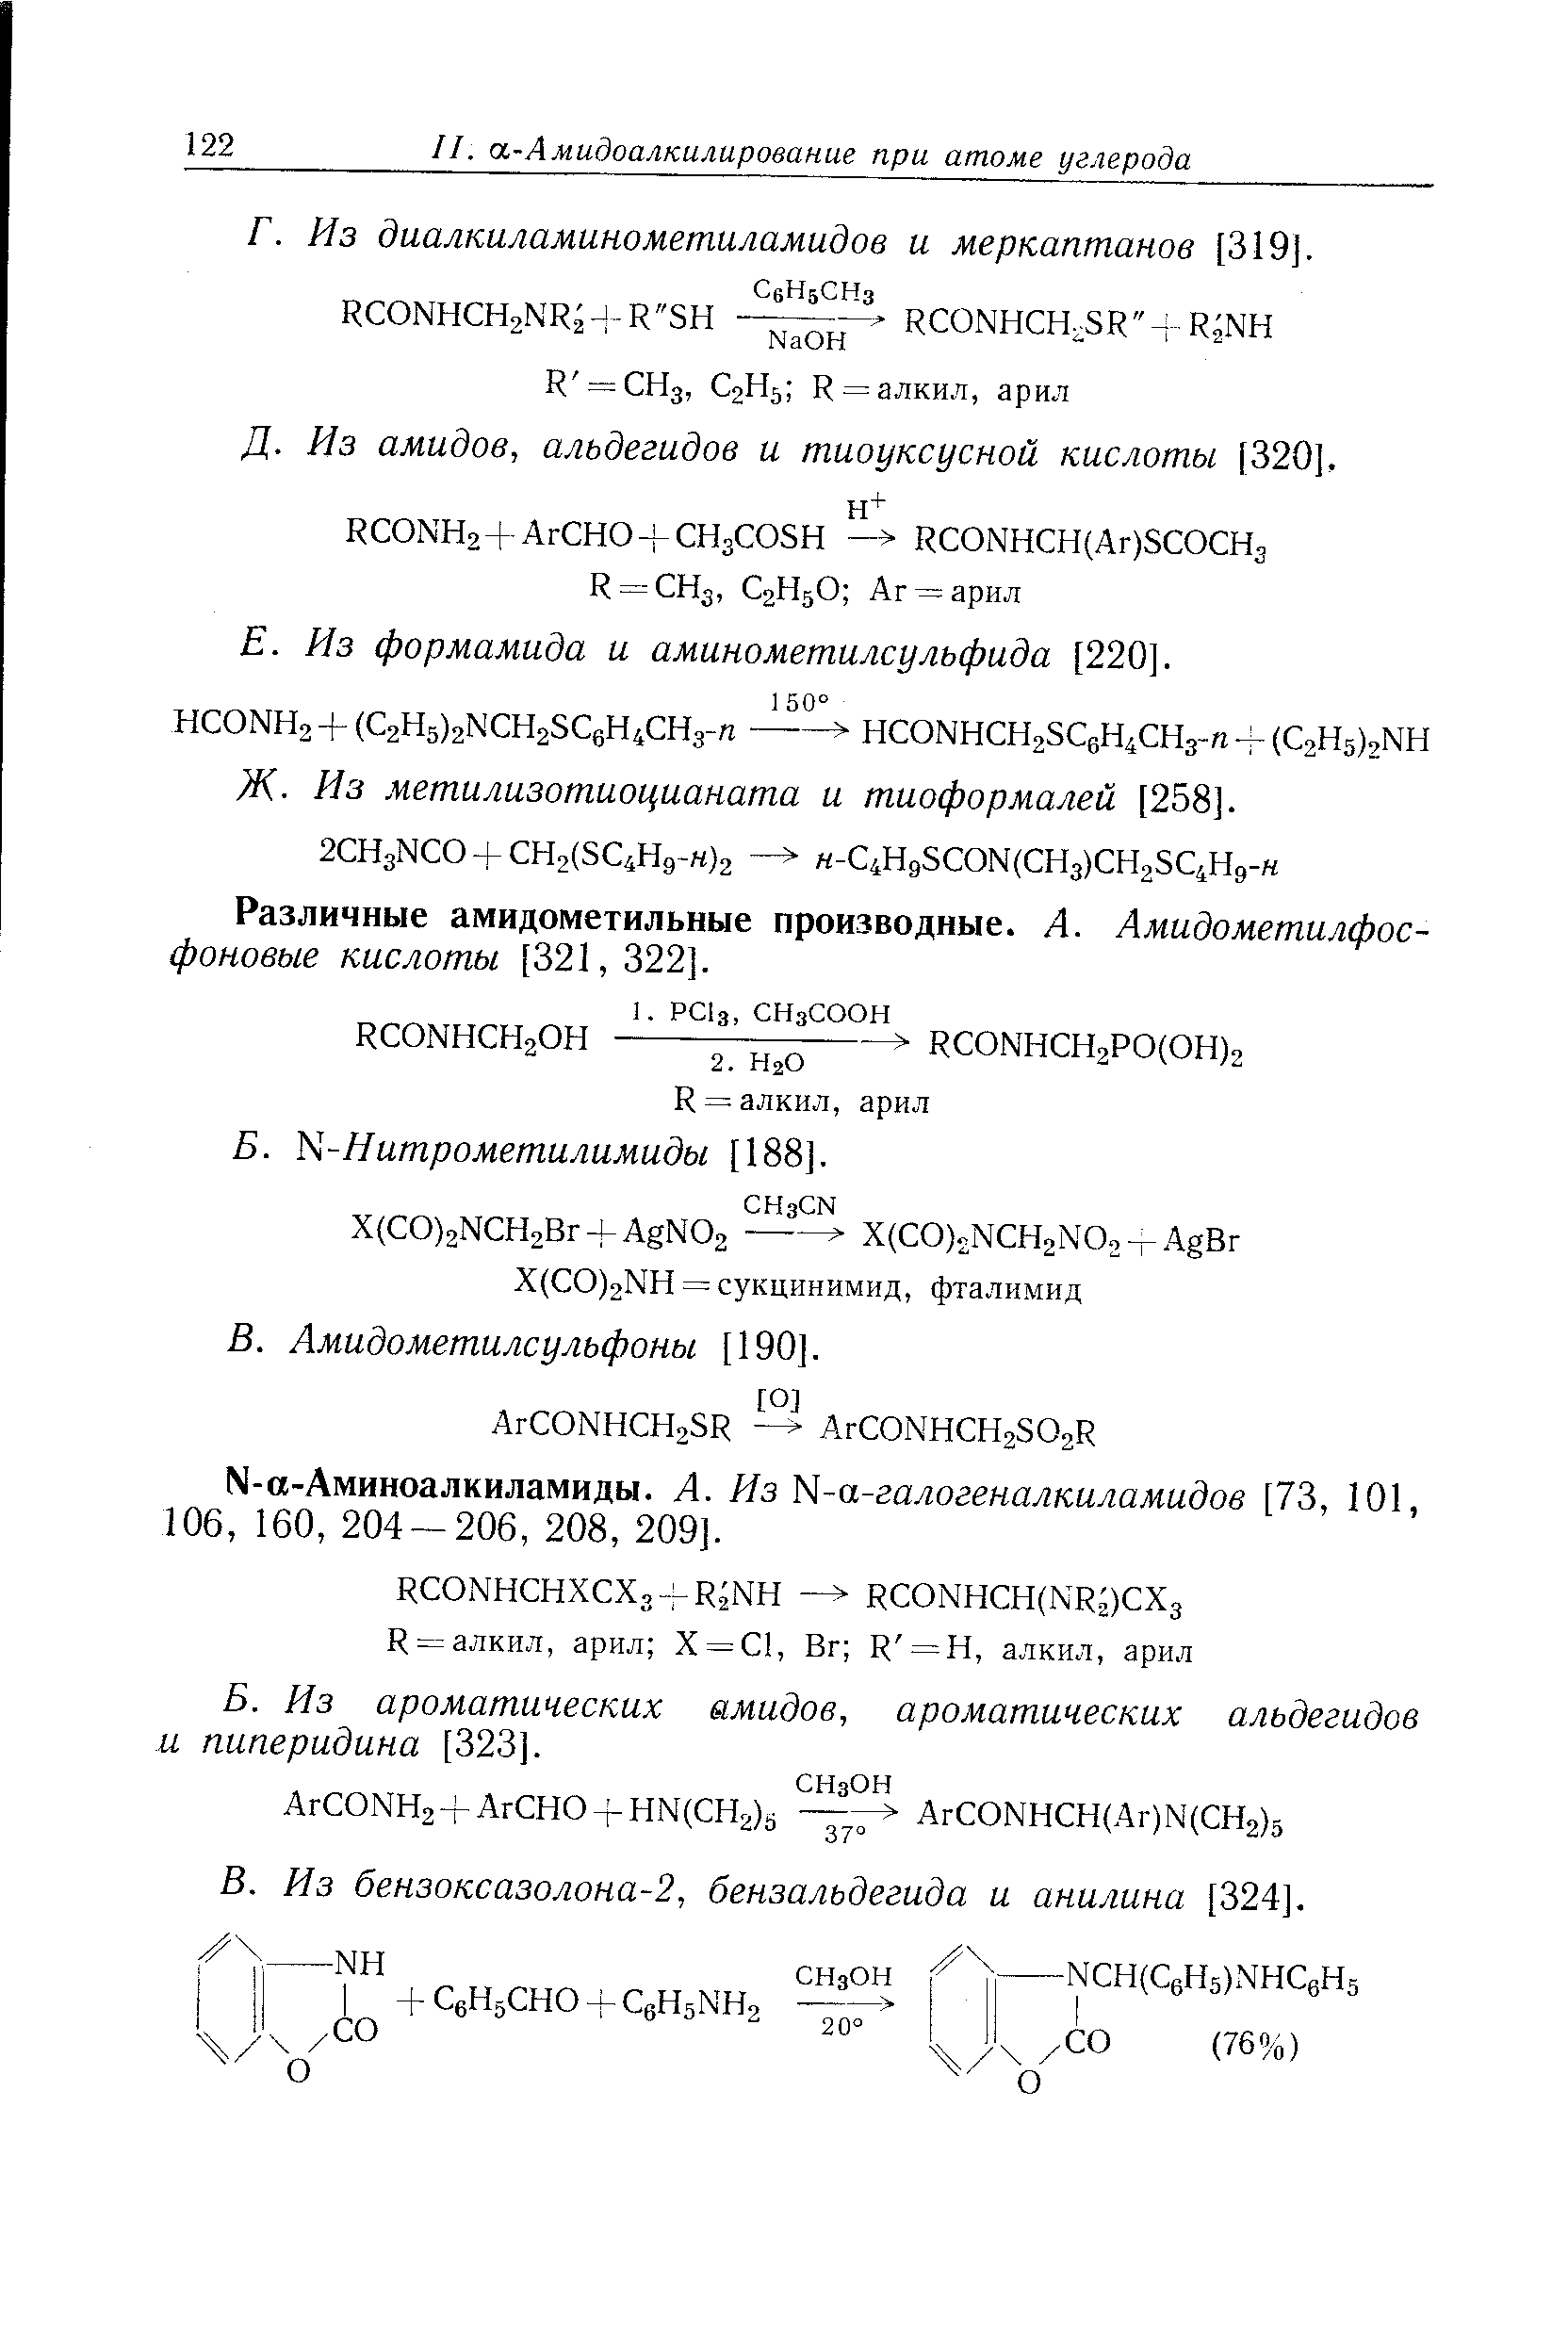 Из ароматических амидов, ароматических альдегидов и пиперидина [323].